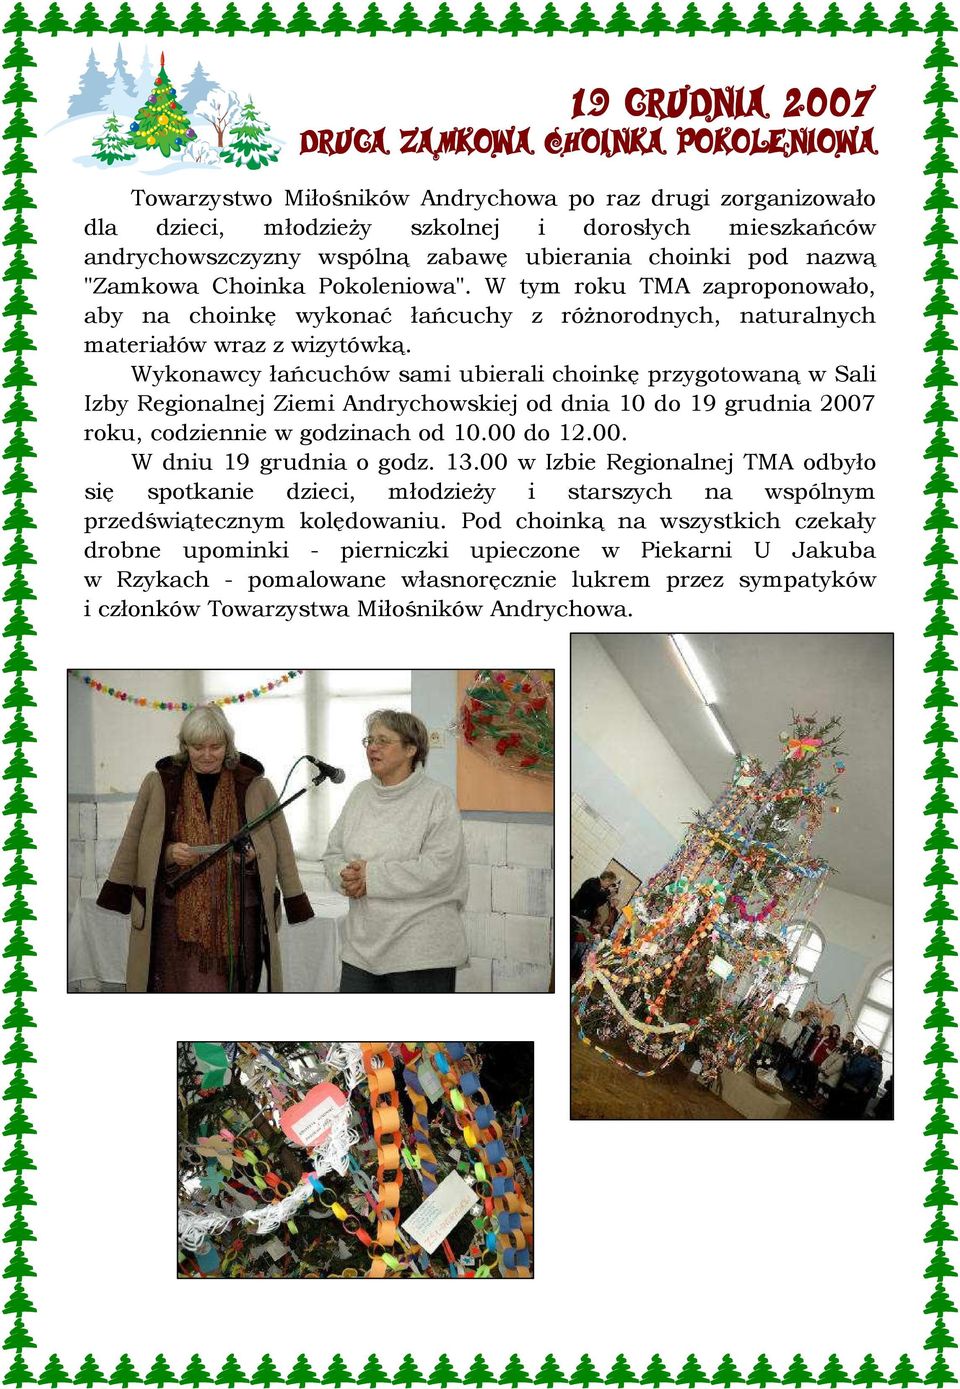 Wykonawcy łańcuchów sami ubierali choinkę przygotowaną w Sali Izby Regionalnej Ziemi Andrychowskiej od dnia 10 do 19 grudnia 2007 roku, codziennie w godzinach od 10.00 do 12.00. W dniu 19 grudnia o godz.